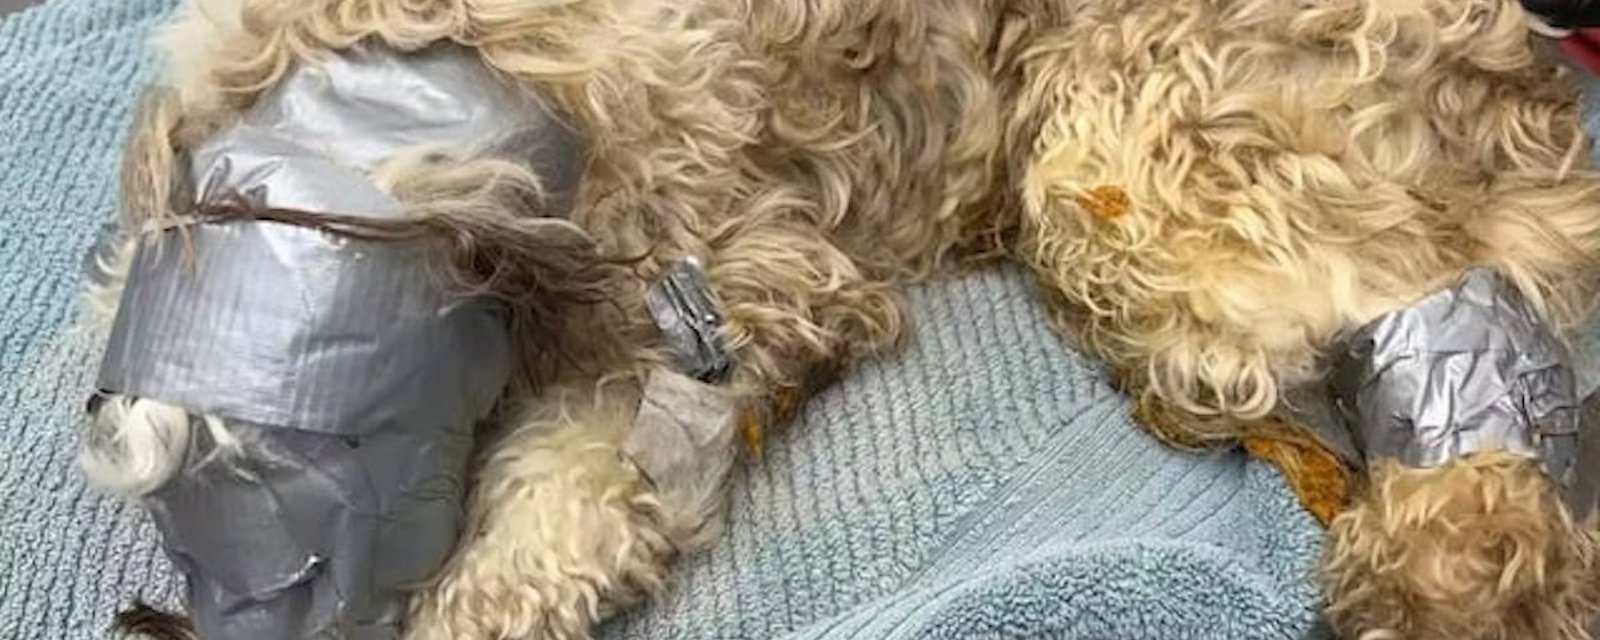 Acte de cruauté sans nom: un chien  a été trouvé dans une poubelle recouvert de ruban adhésif 